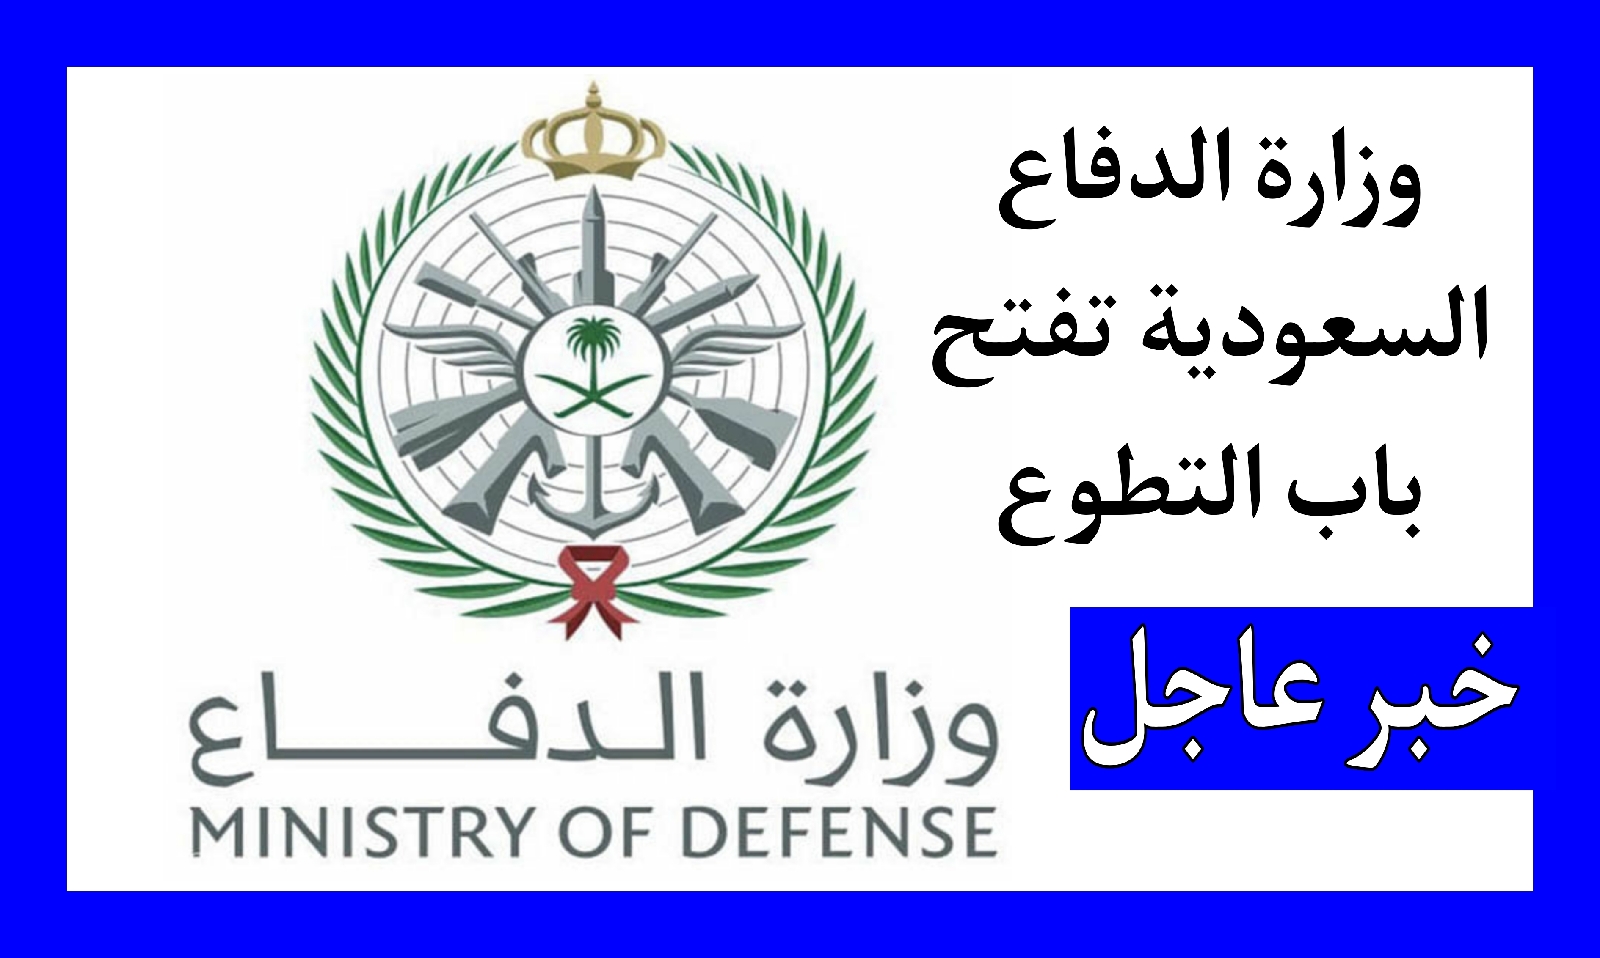 وزارة الدفاع السعودية تعلن فتح باب التقديم للجامعيين وطلبة الكليات العسكرية 2022